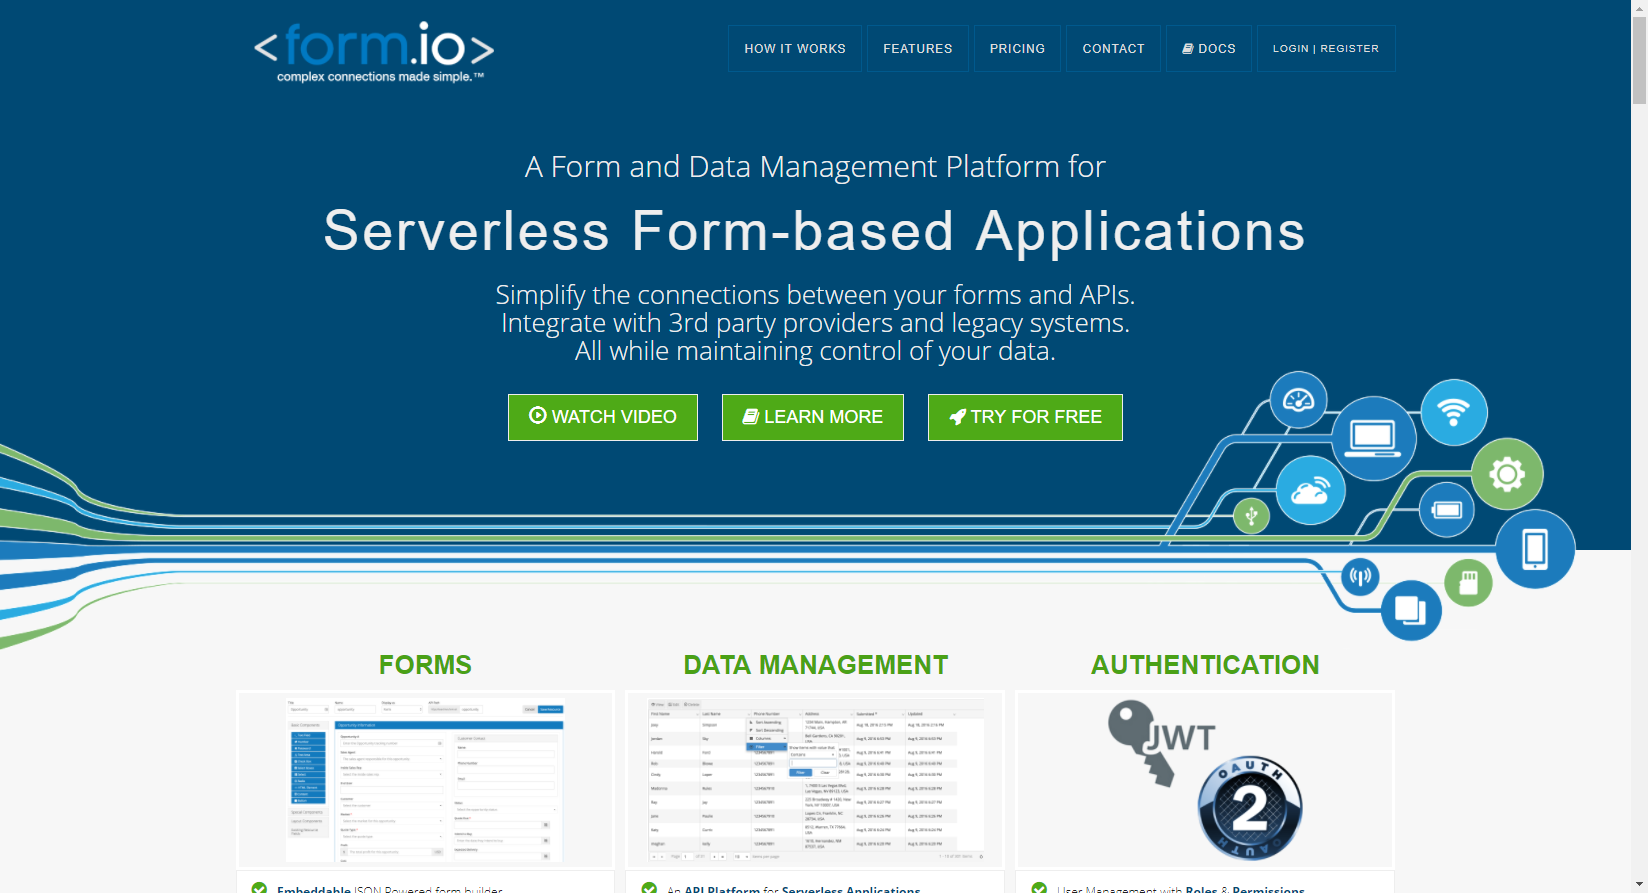 Form.ioを利用したWebフォームの作成とSendGridの連携